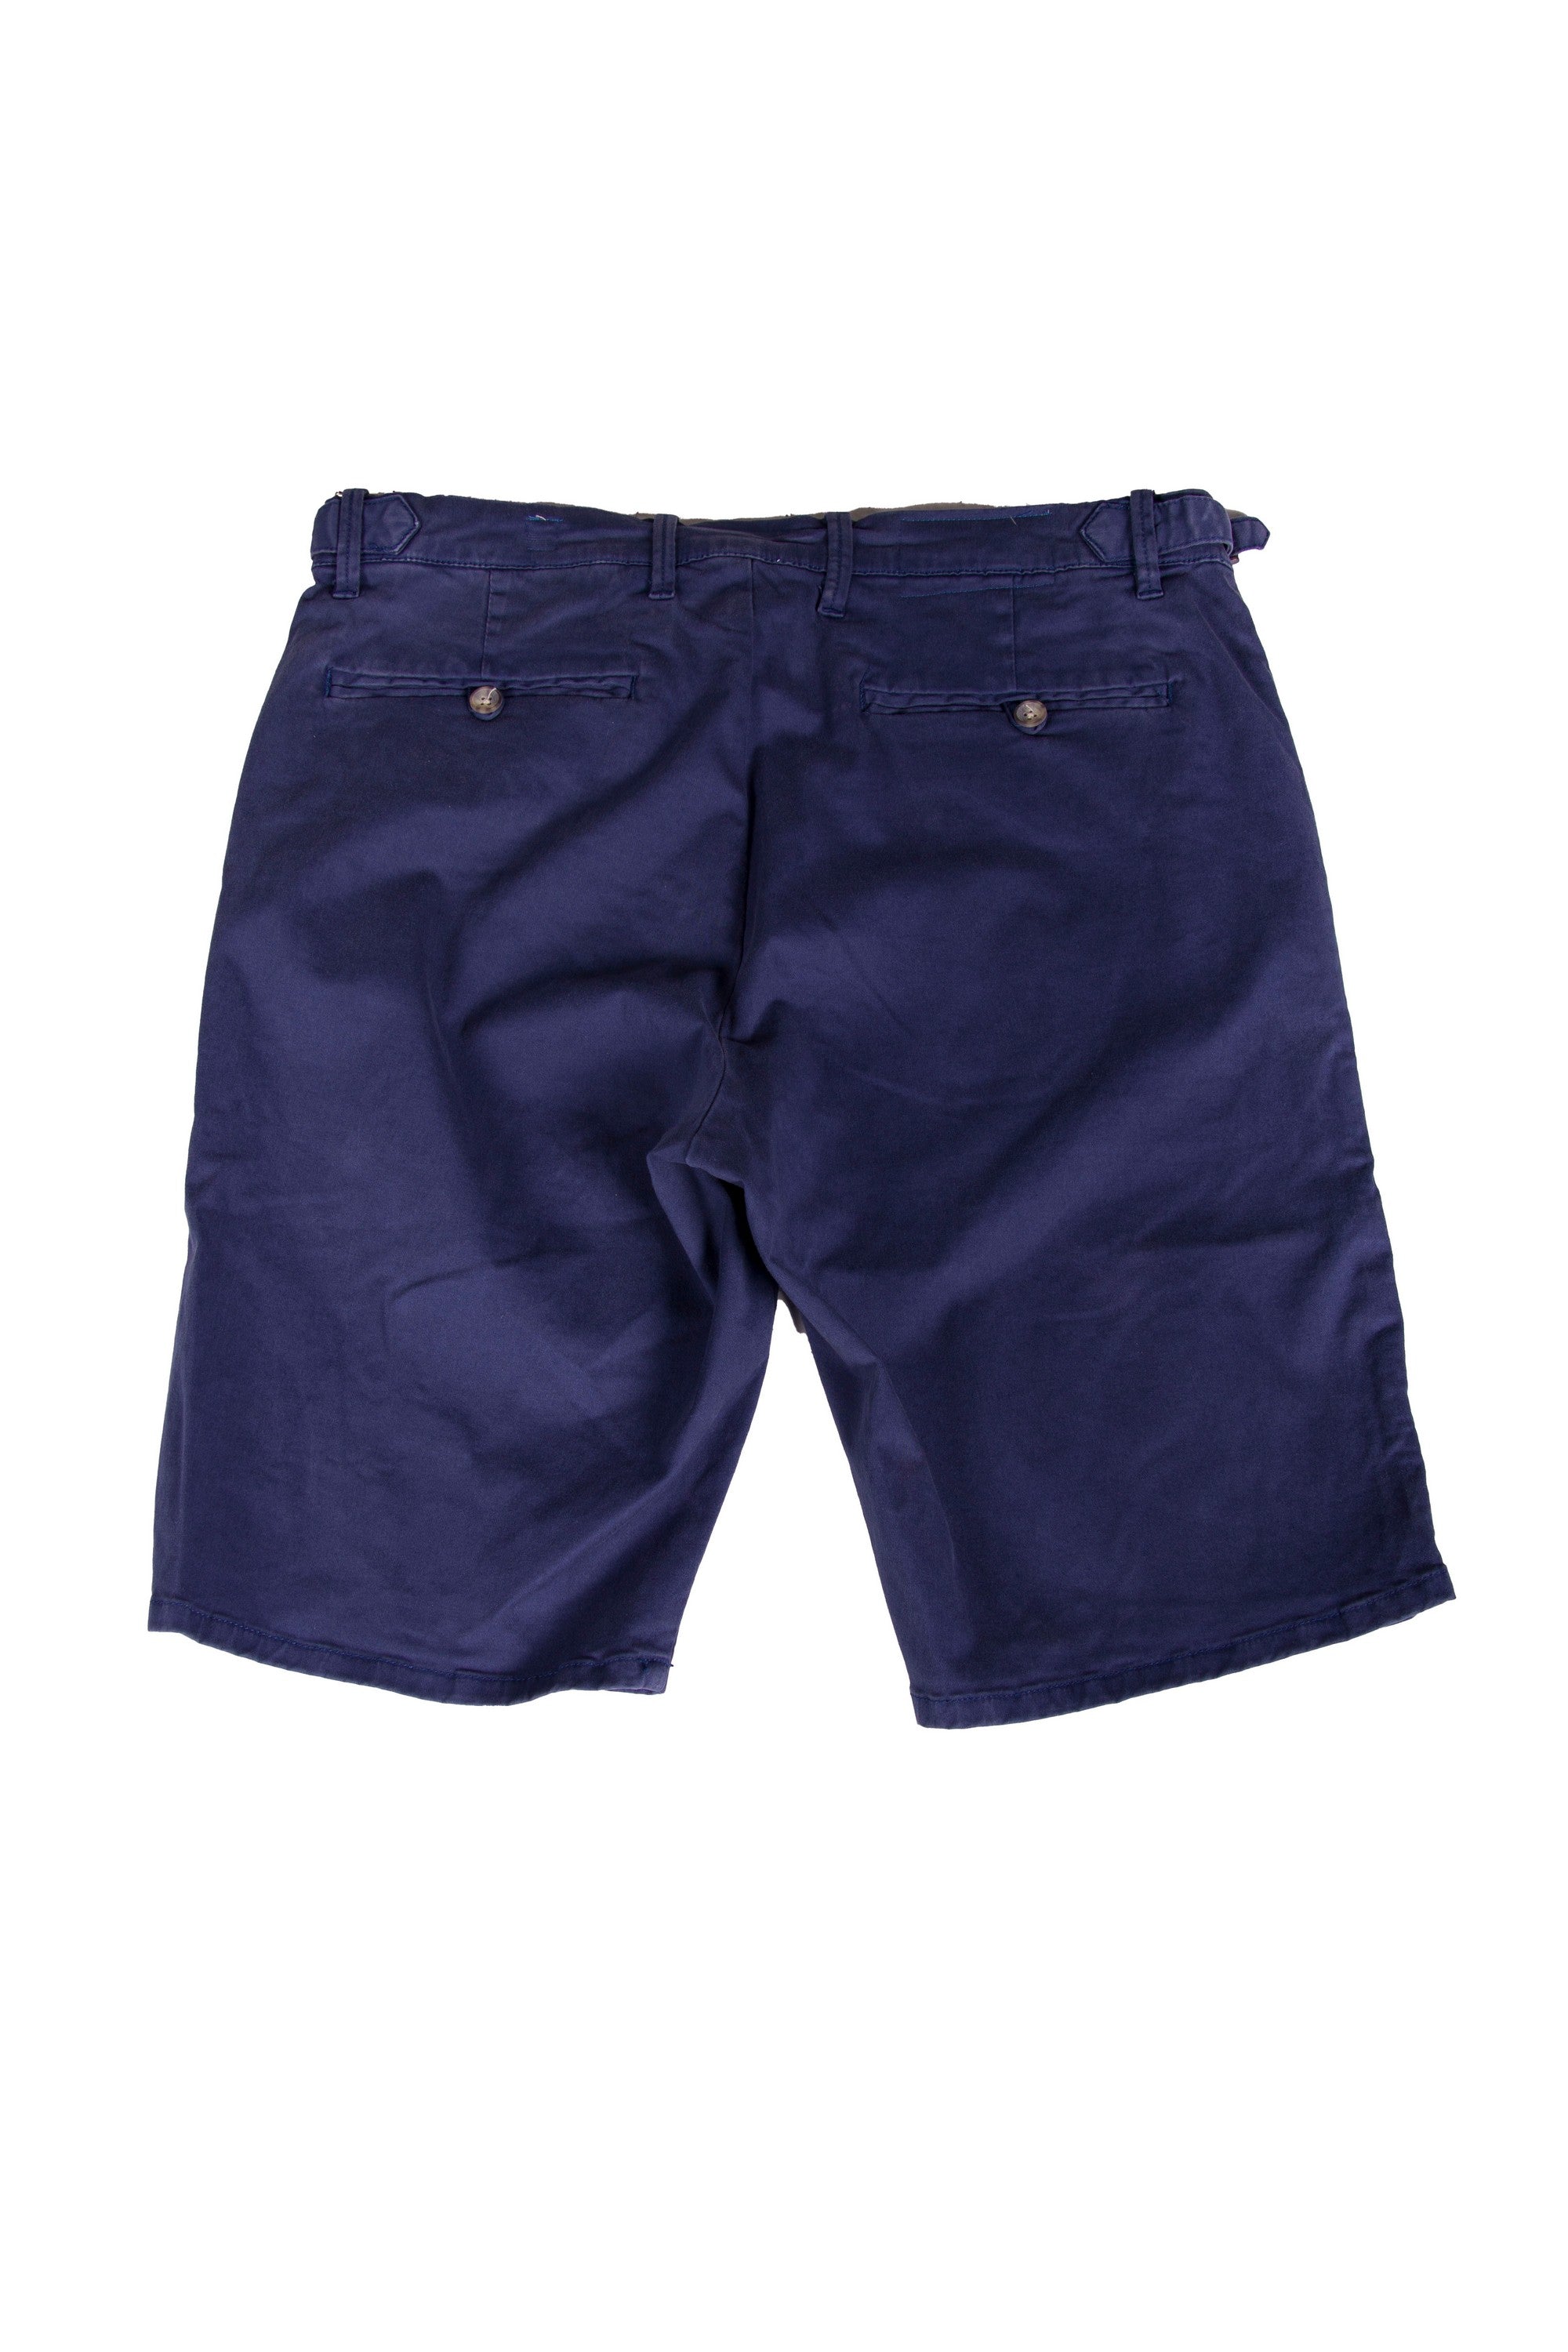 Re*pair Classic Chino Shorts